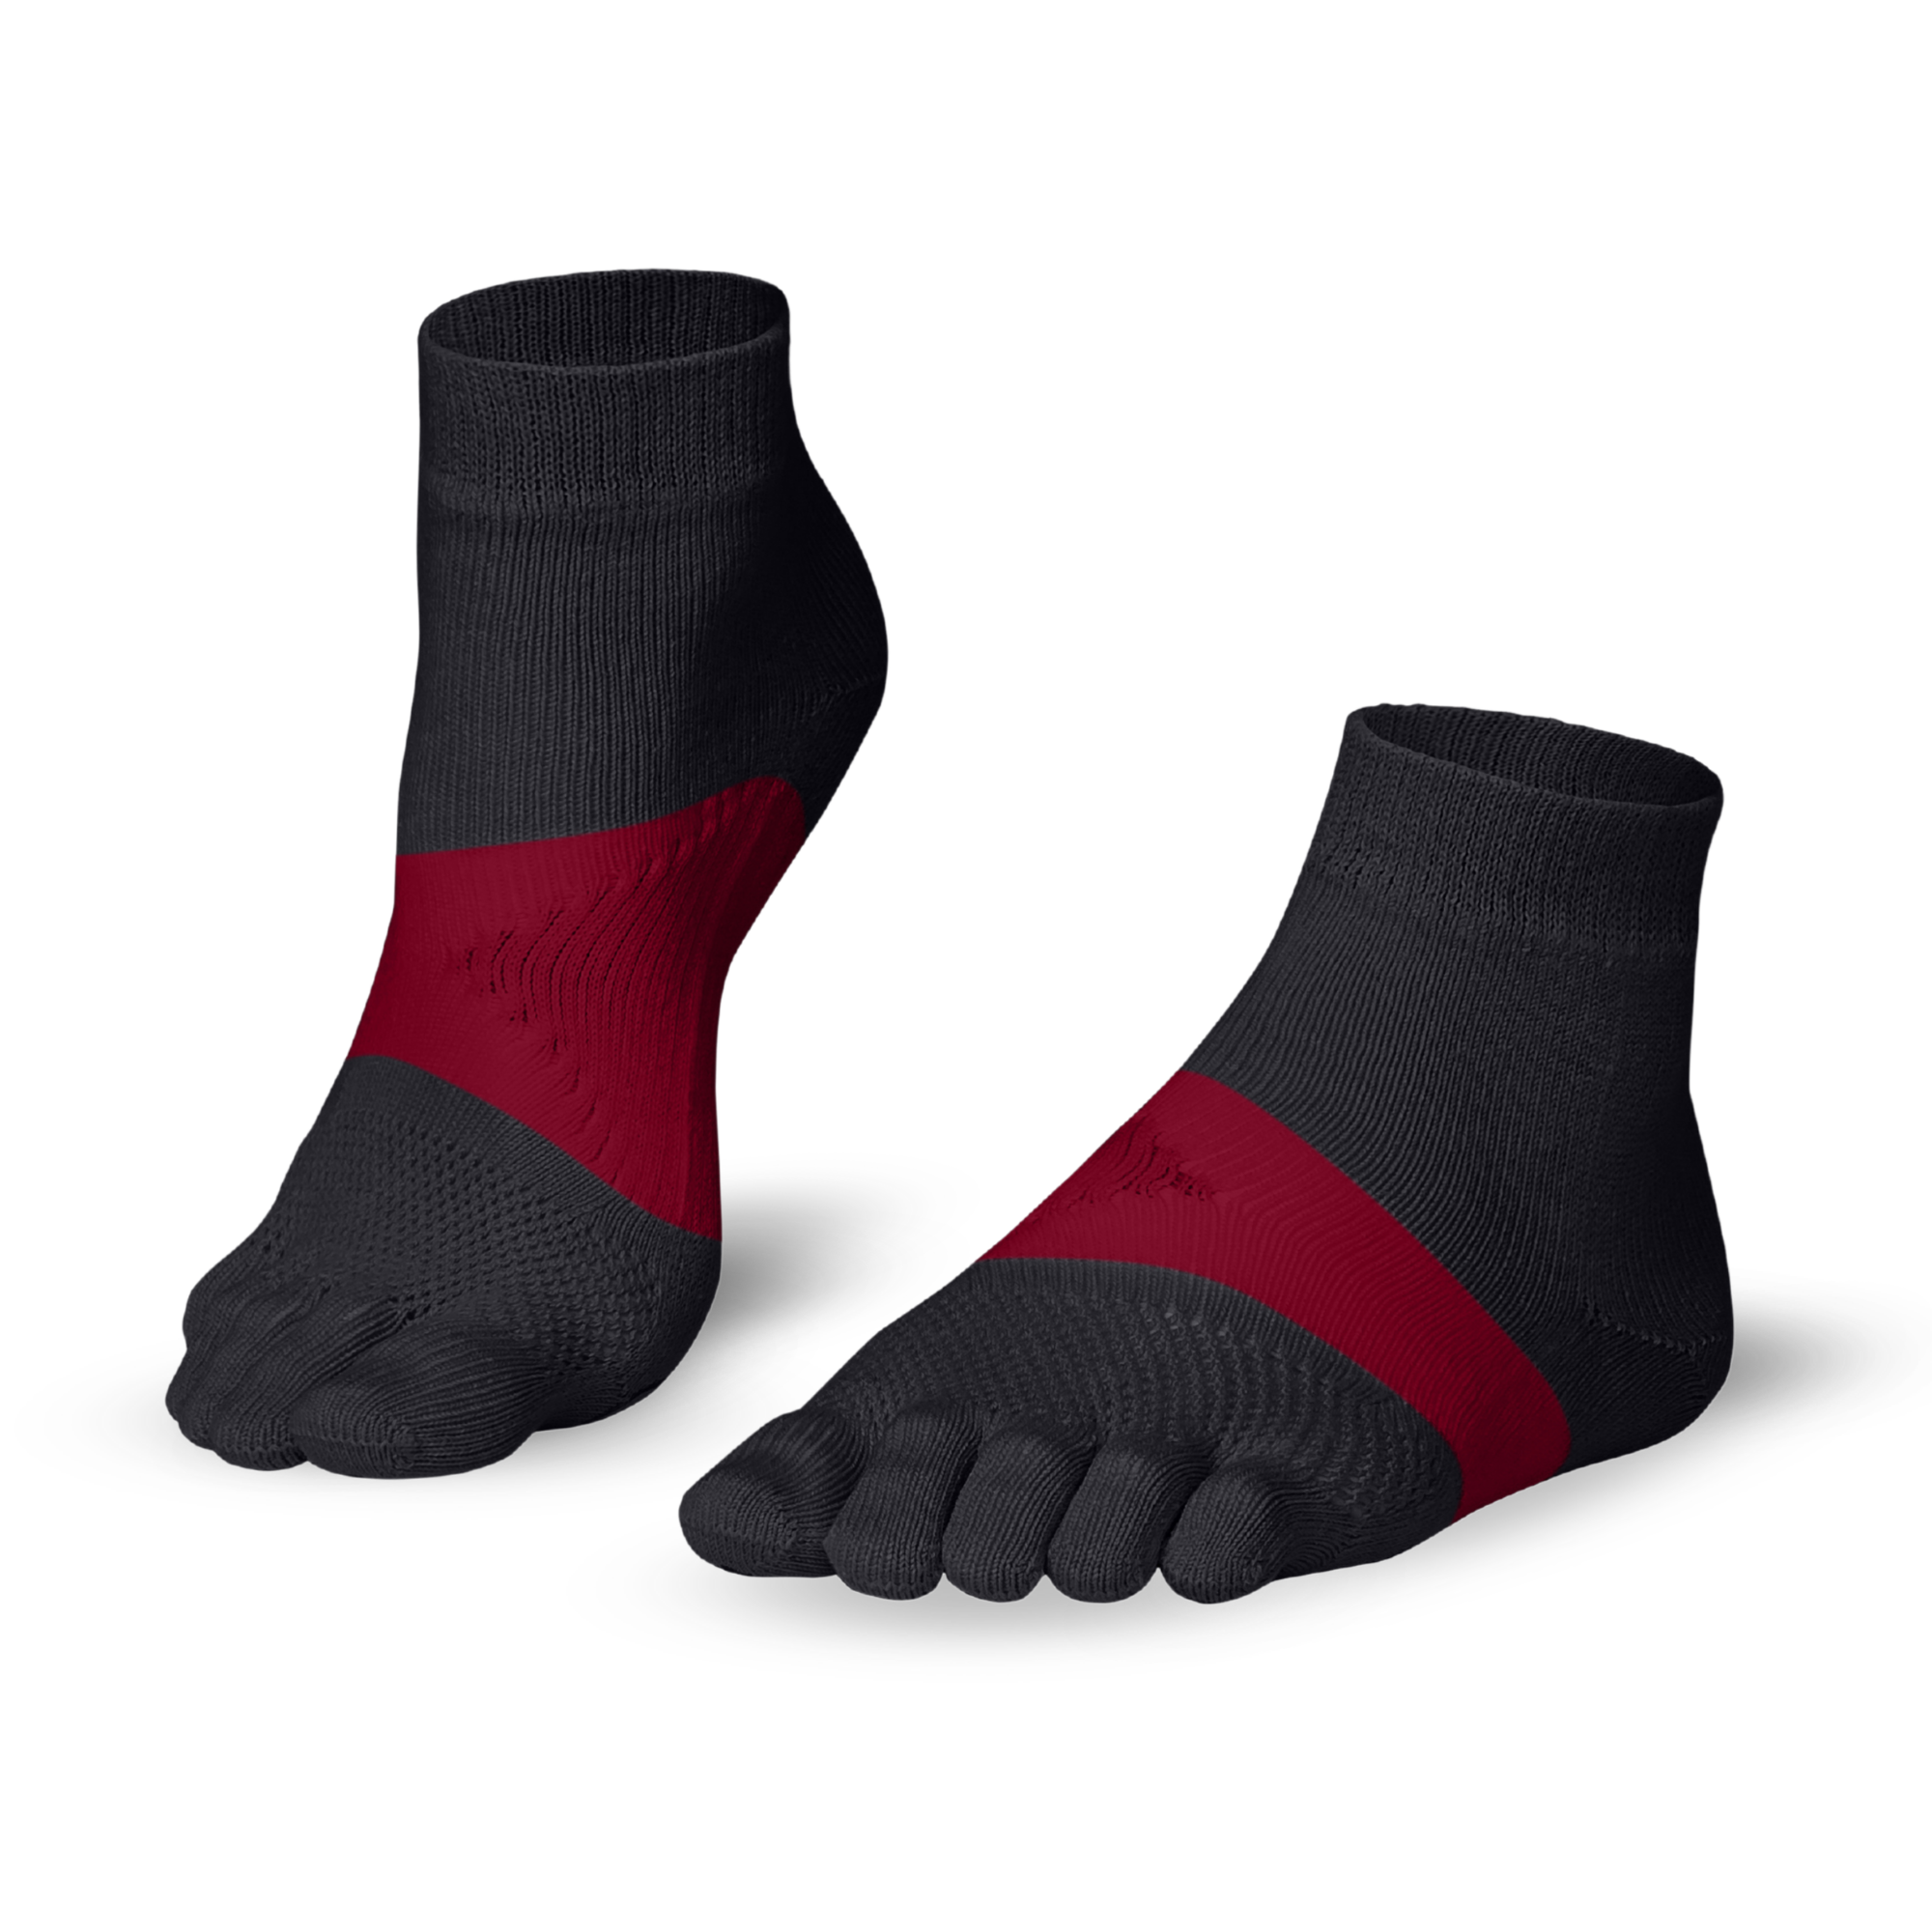 Running TS running toe socks - the essential running toe socks from Knitido : gray / crimson